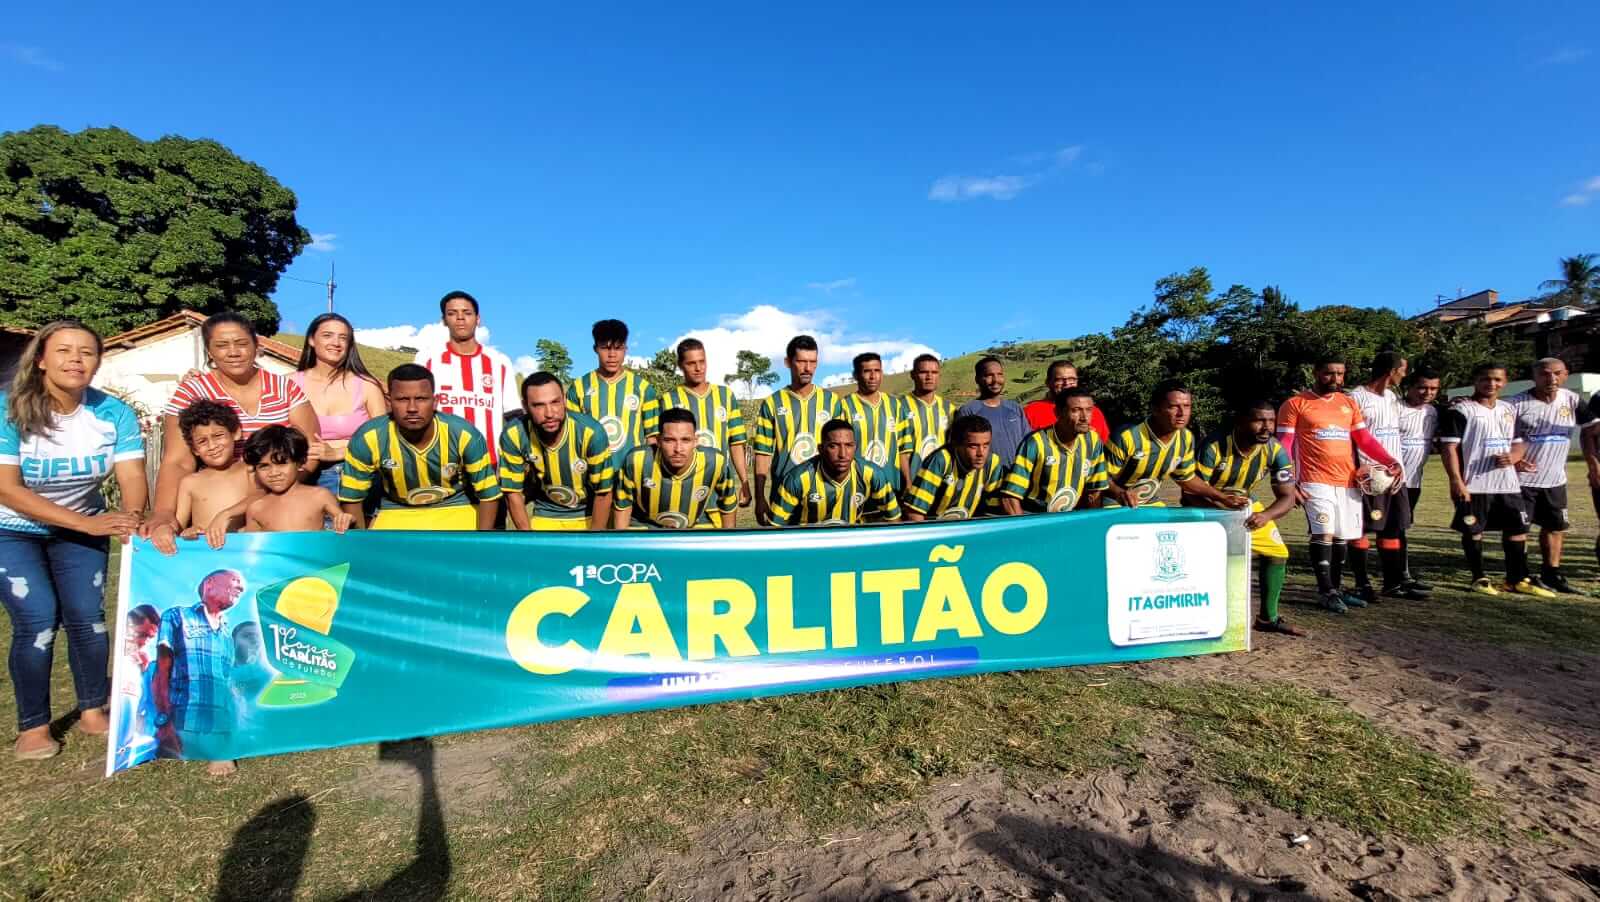 Rodada de abertura da 1ª Copa Carlitão de Futebol movimenta o distrito de União Baiana em Itagimirim 6